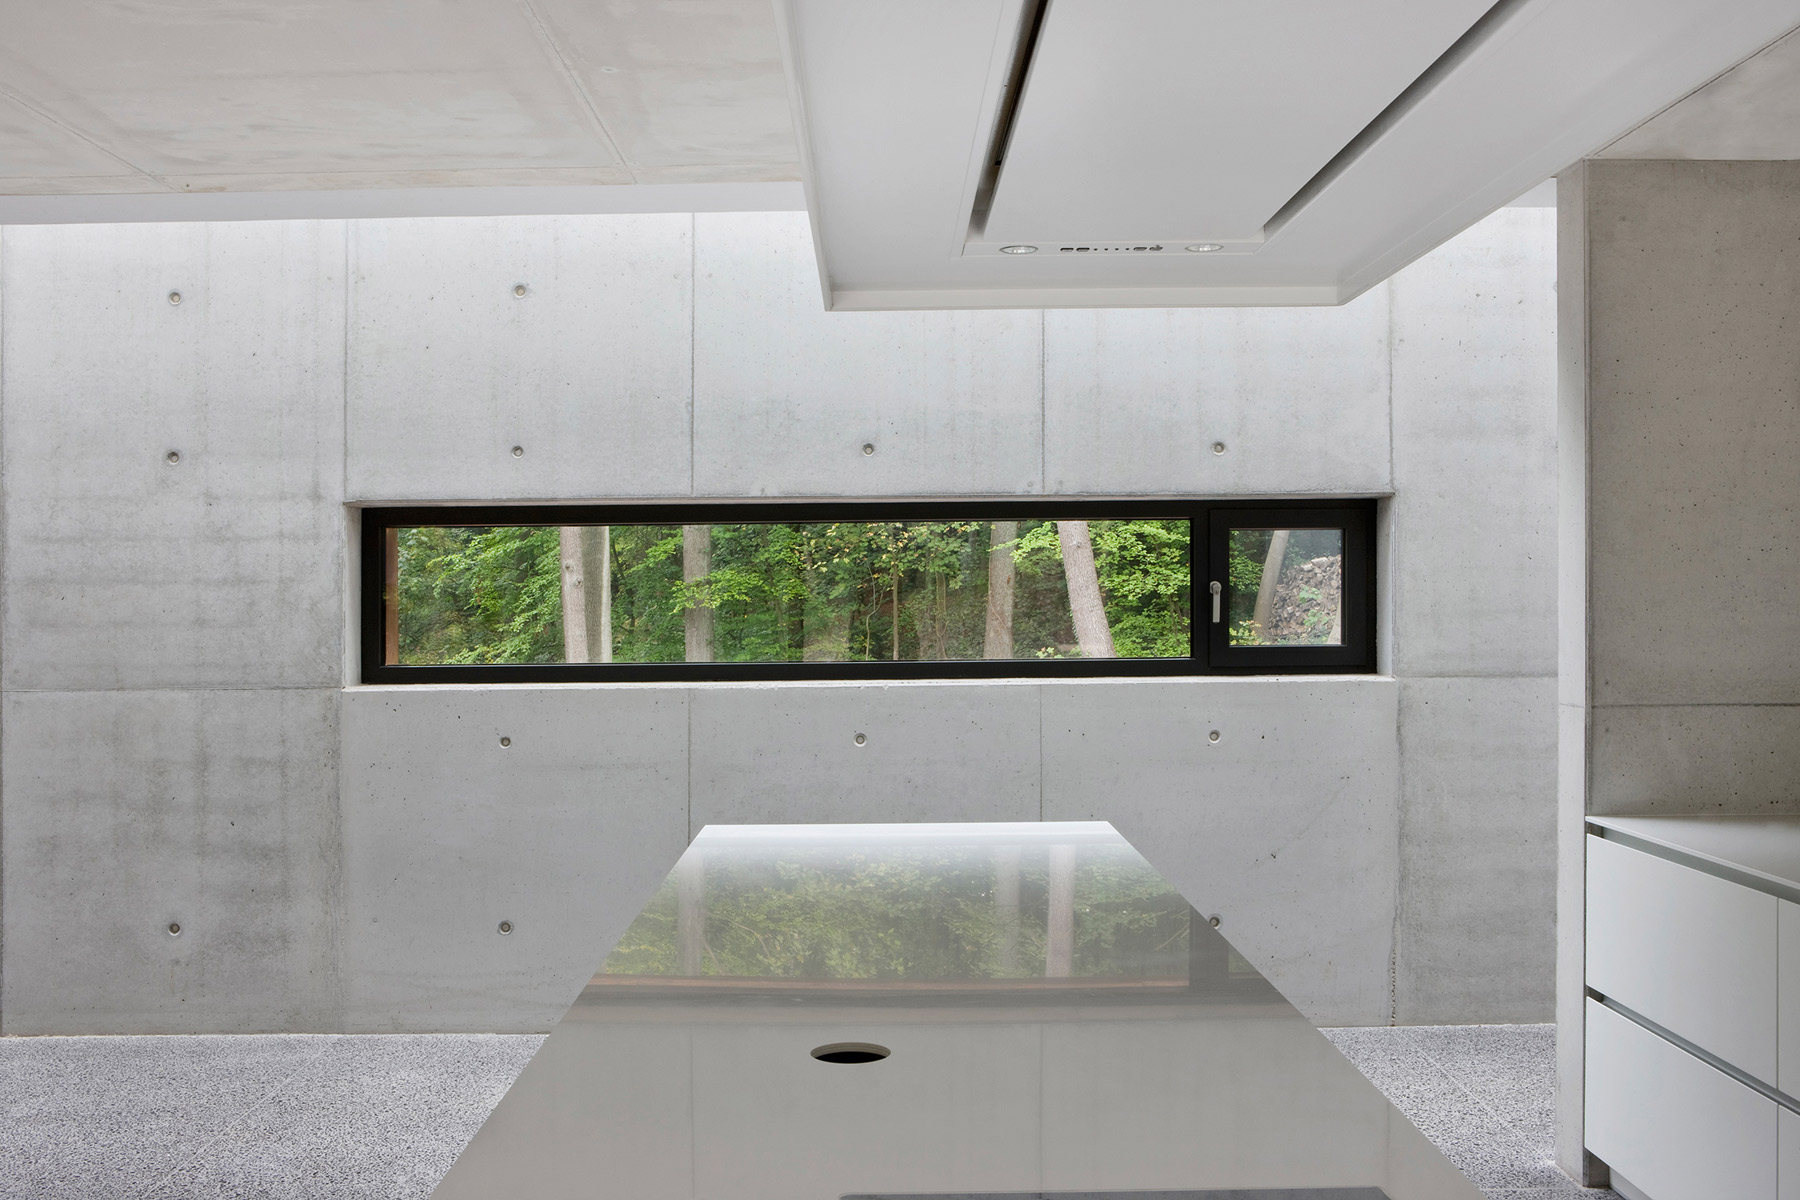 Pohledový beton je dominantním prvkem interiérového designu. Vidět je z části otvíravý okenní element ze systému Schüco AWS 75.SI.